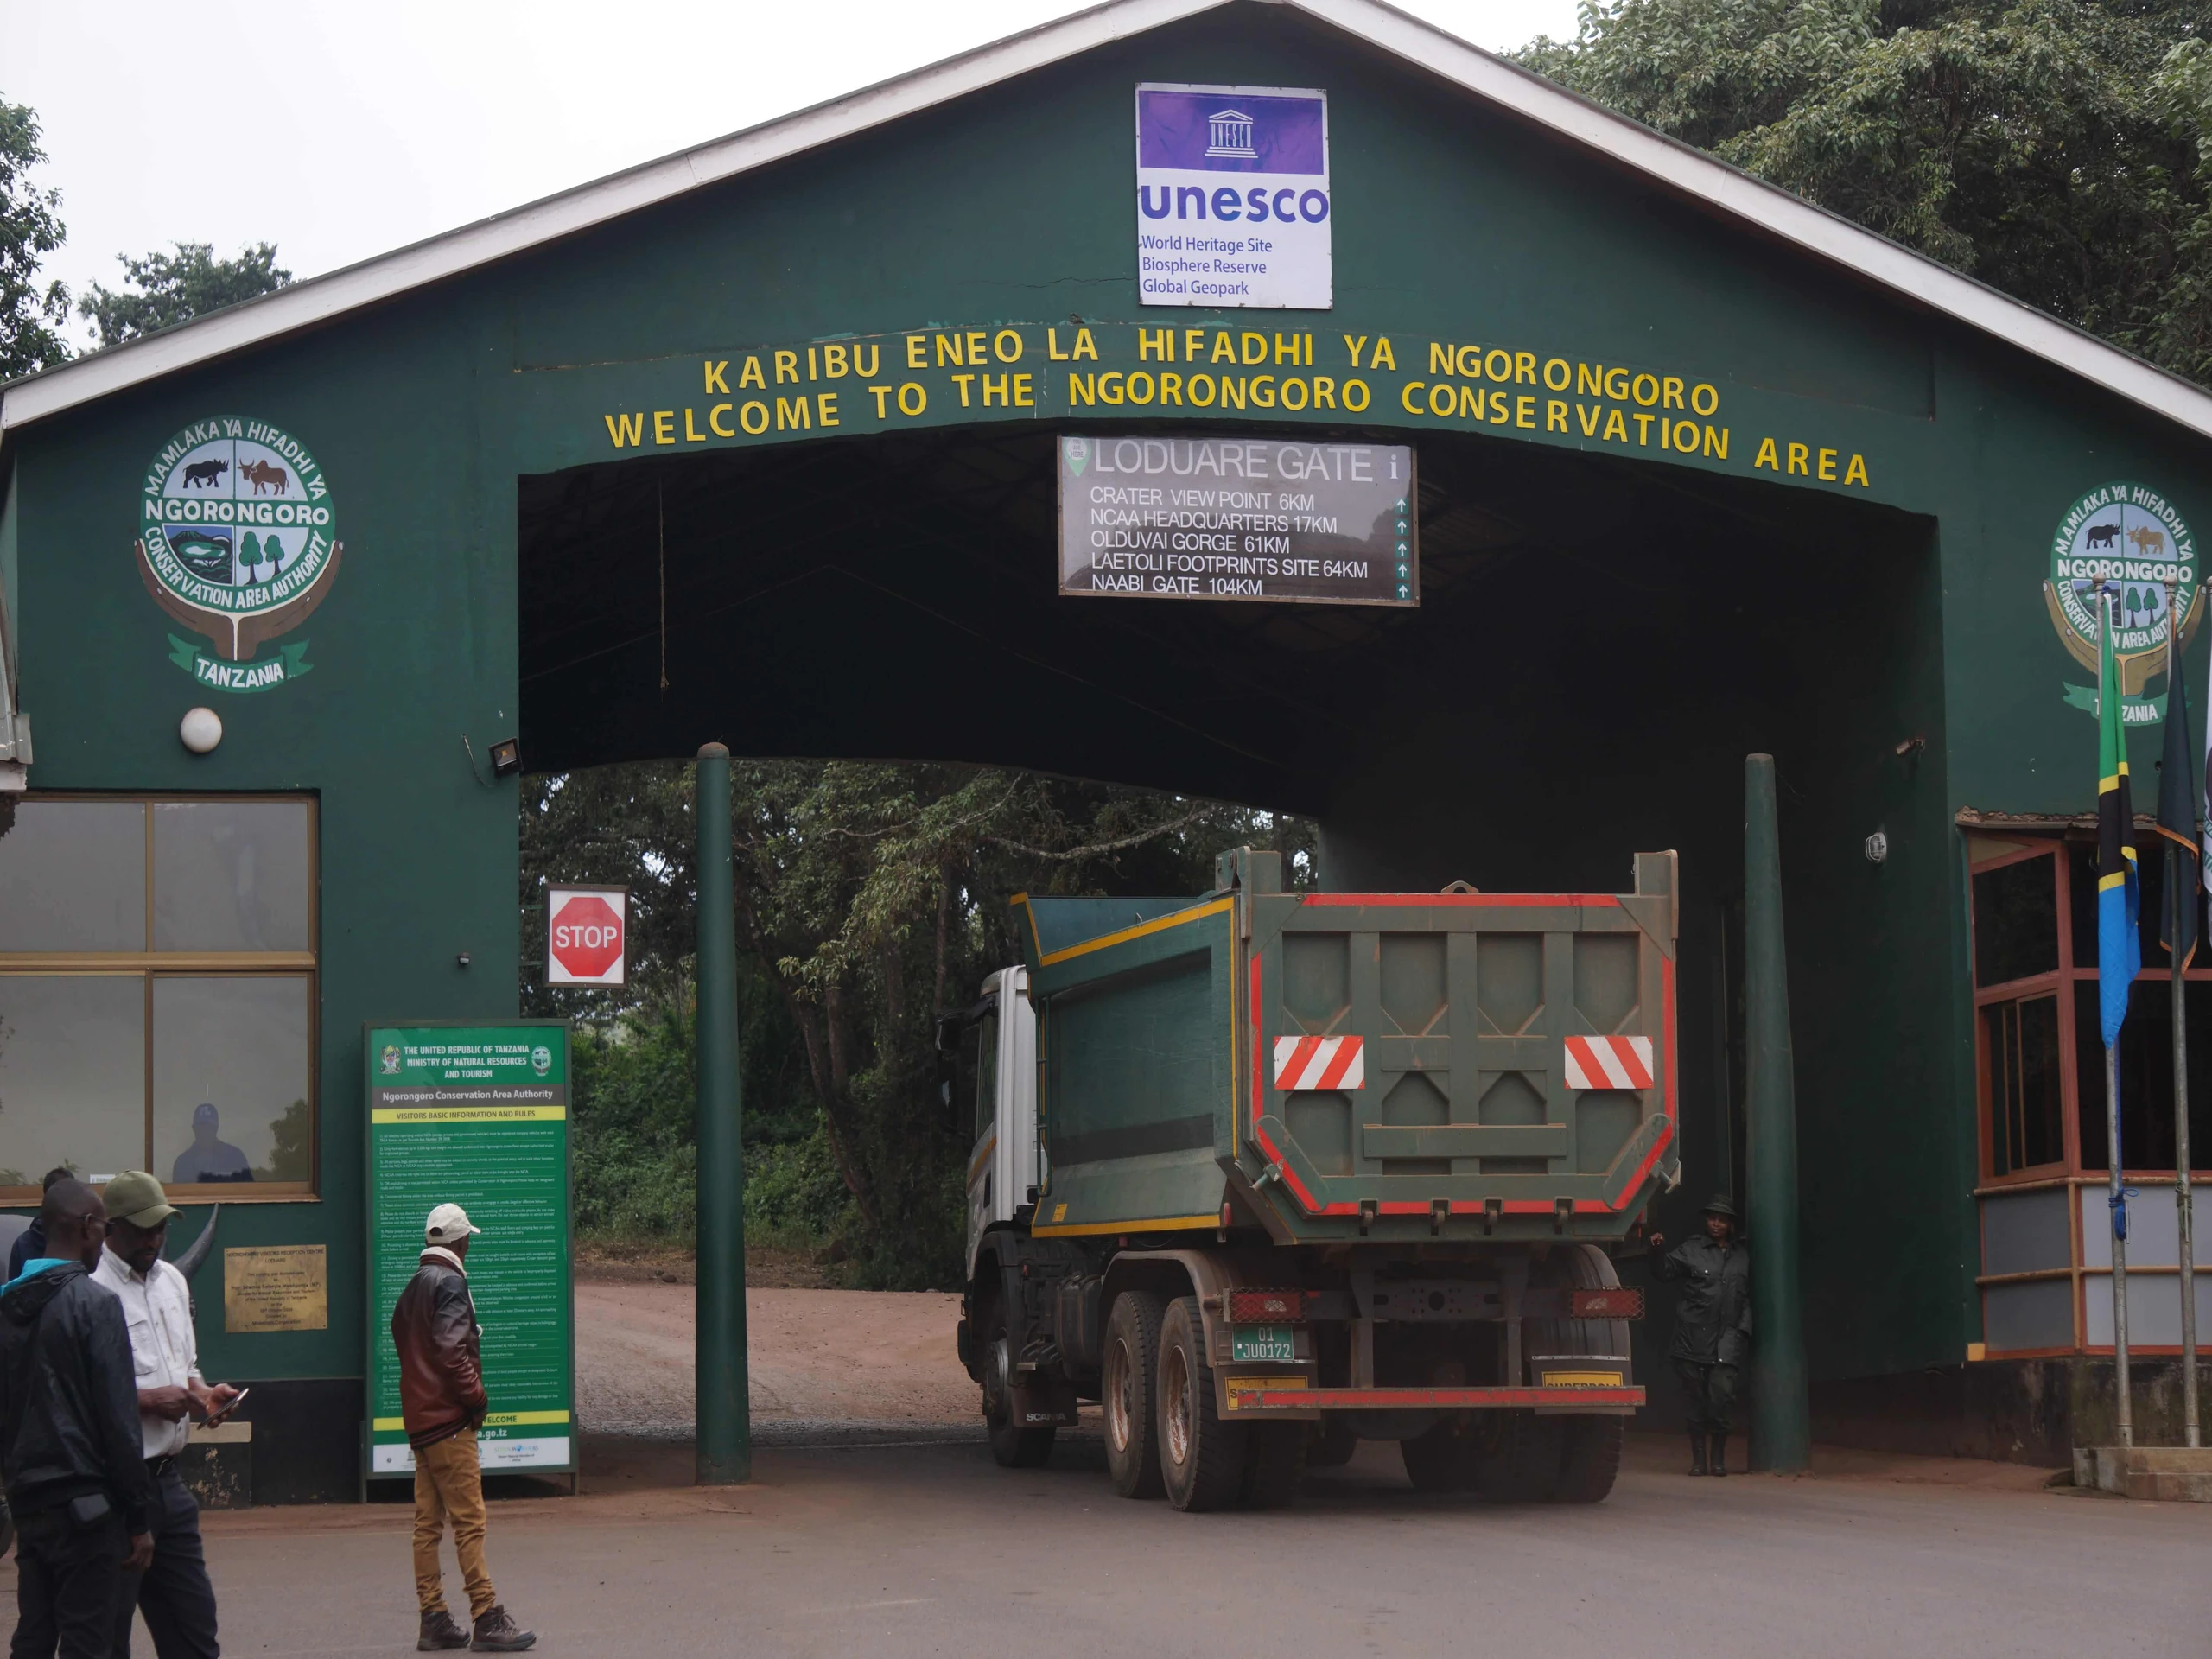 Entering the Ngorongoro conservation area